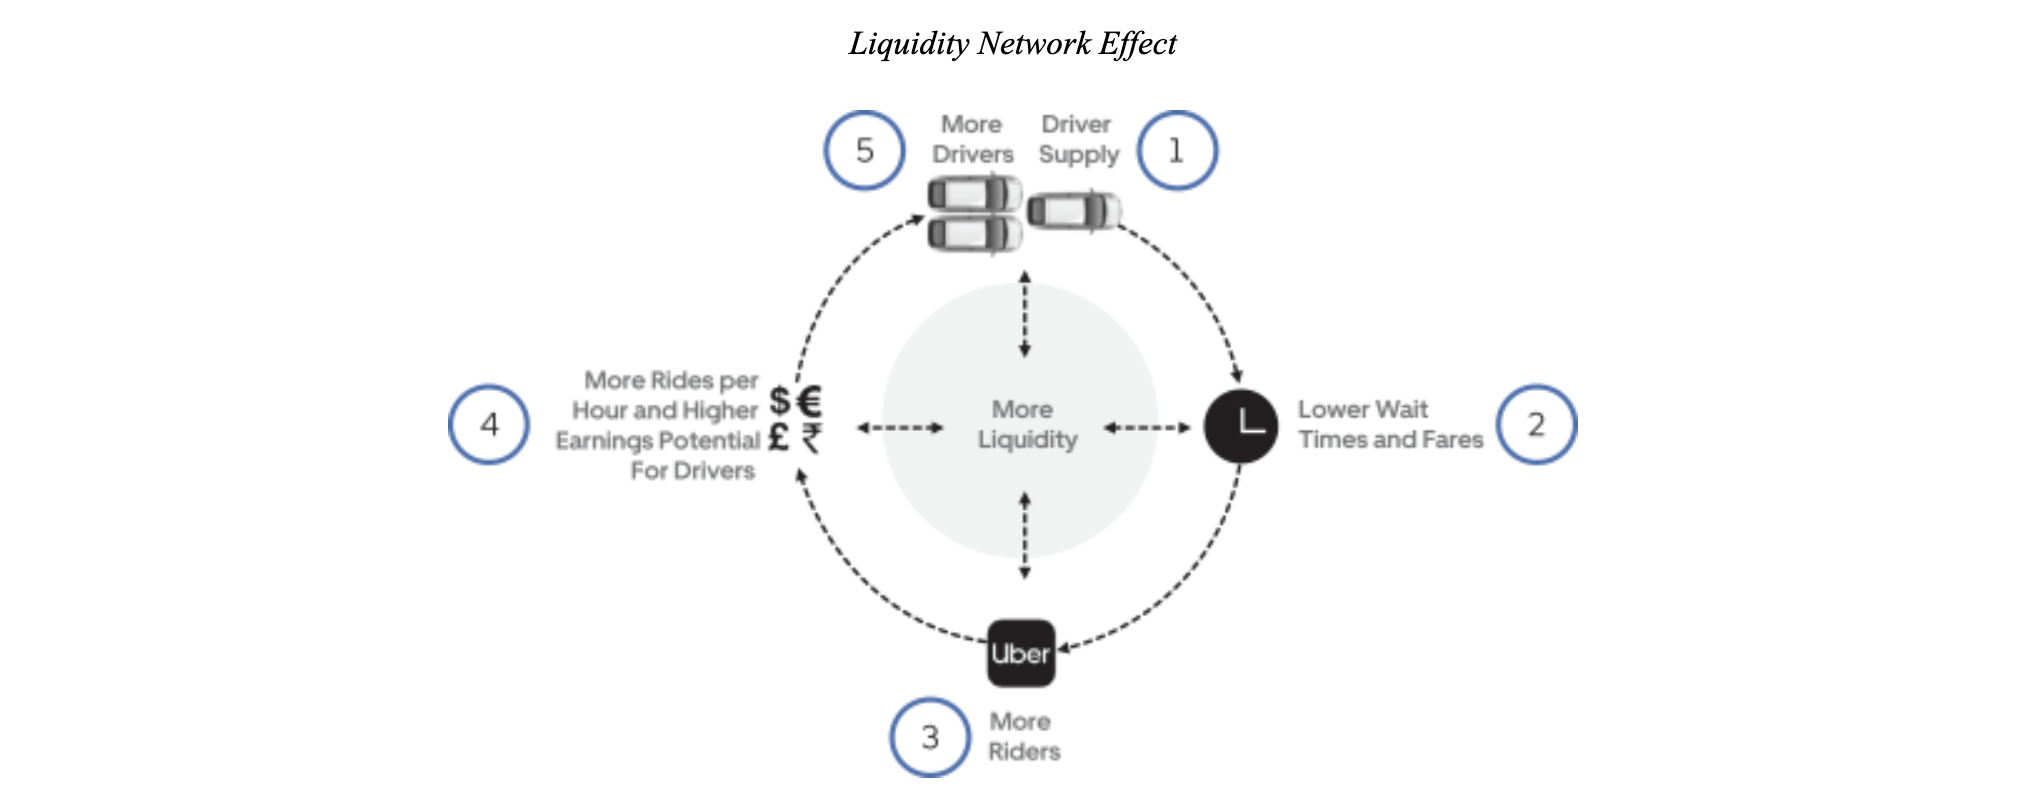  ber's liquidity network effect